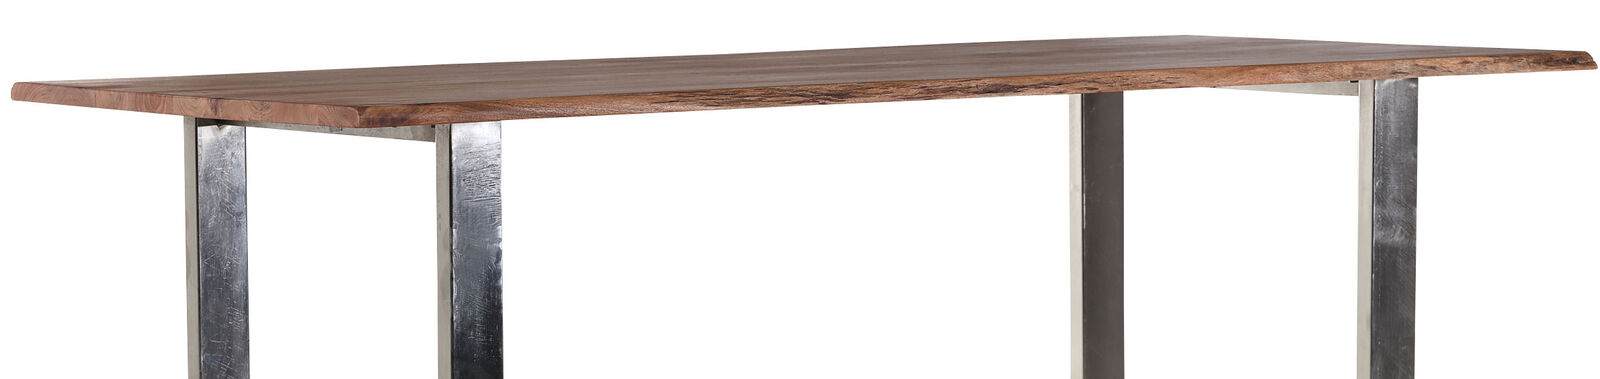 Esstisch Edge Akazie Massivholz 160x90cm 200x100 cm Küchentisch U-Form Metall